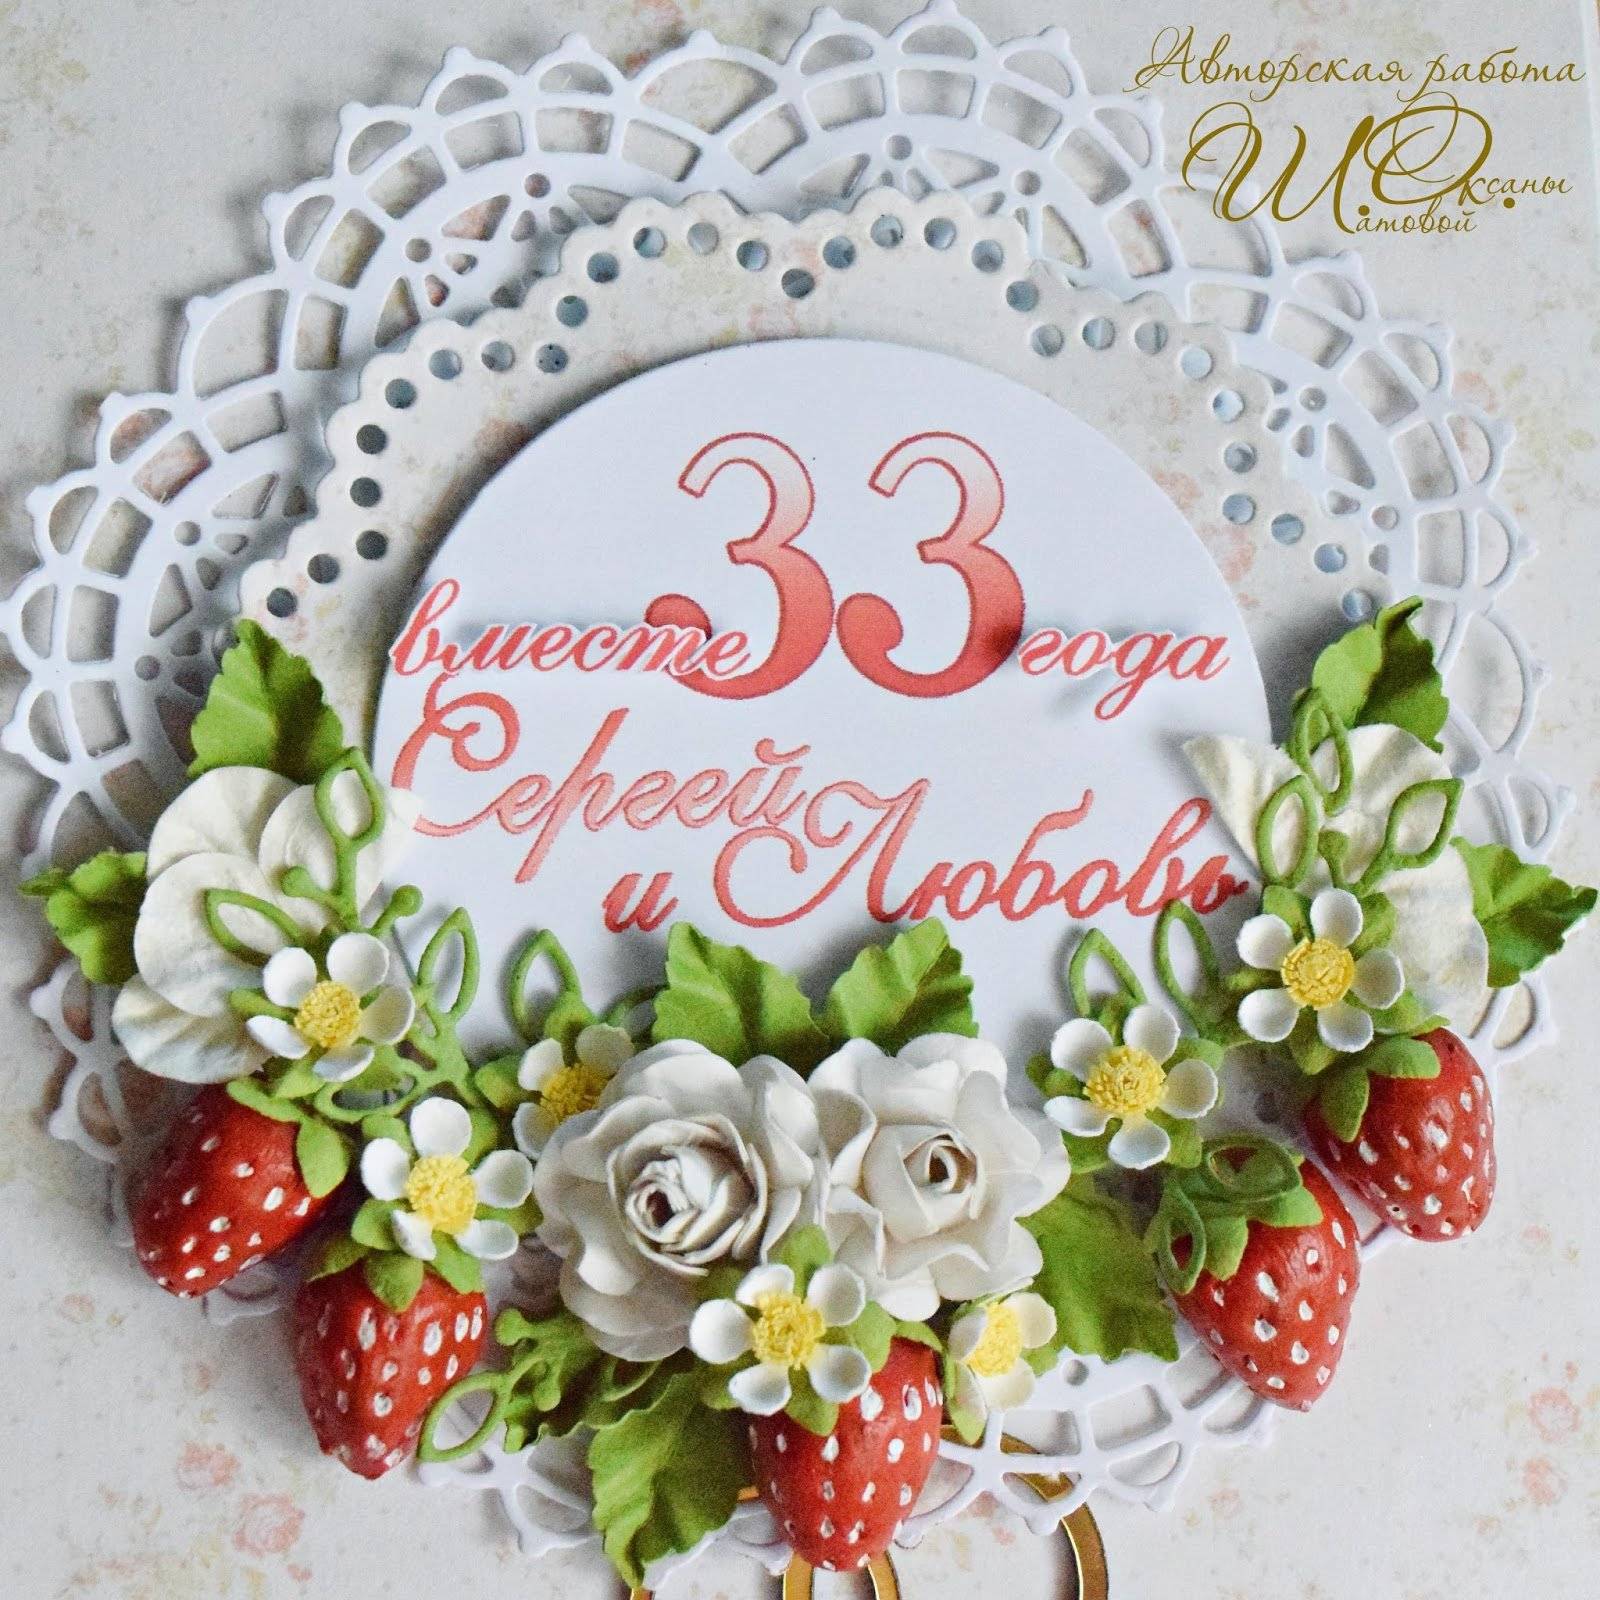 33 года свадьбе: как называется эта годовщина совместной жизни - каменная или клубничная, прикольные поздравления и подарки родителям, картинки и открытки